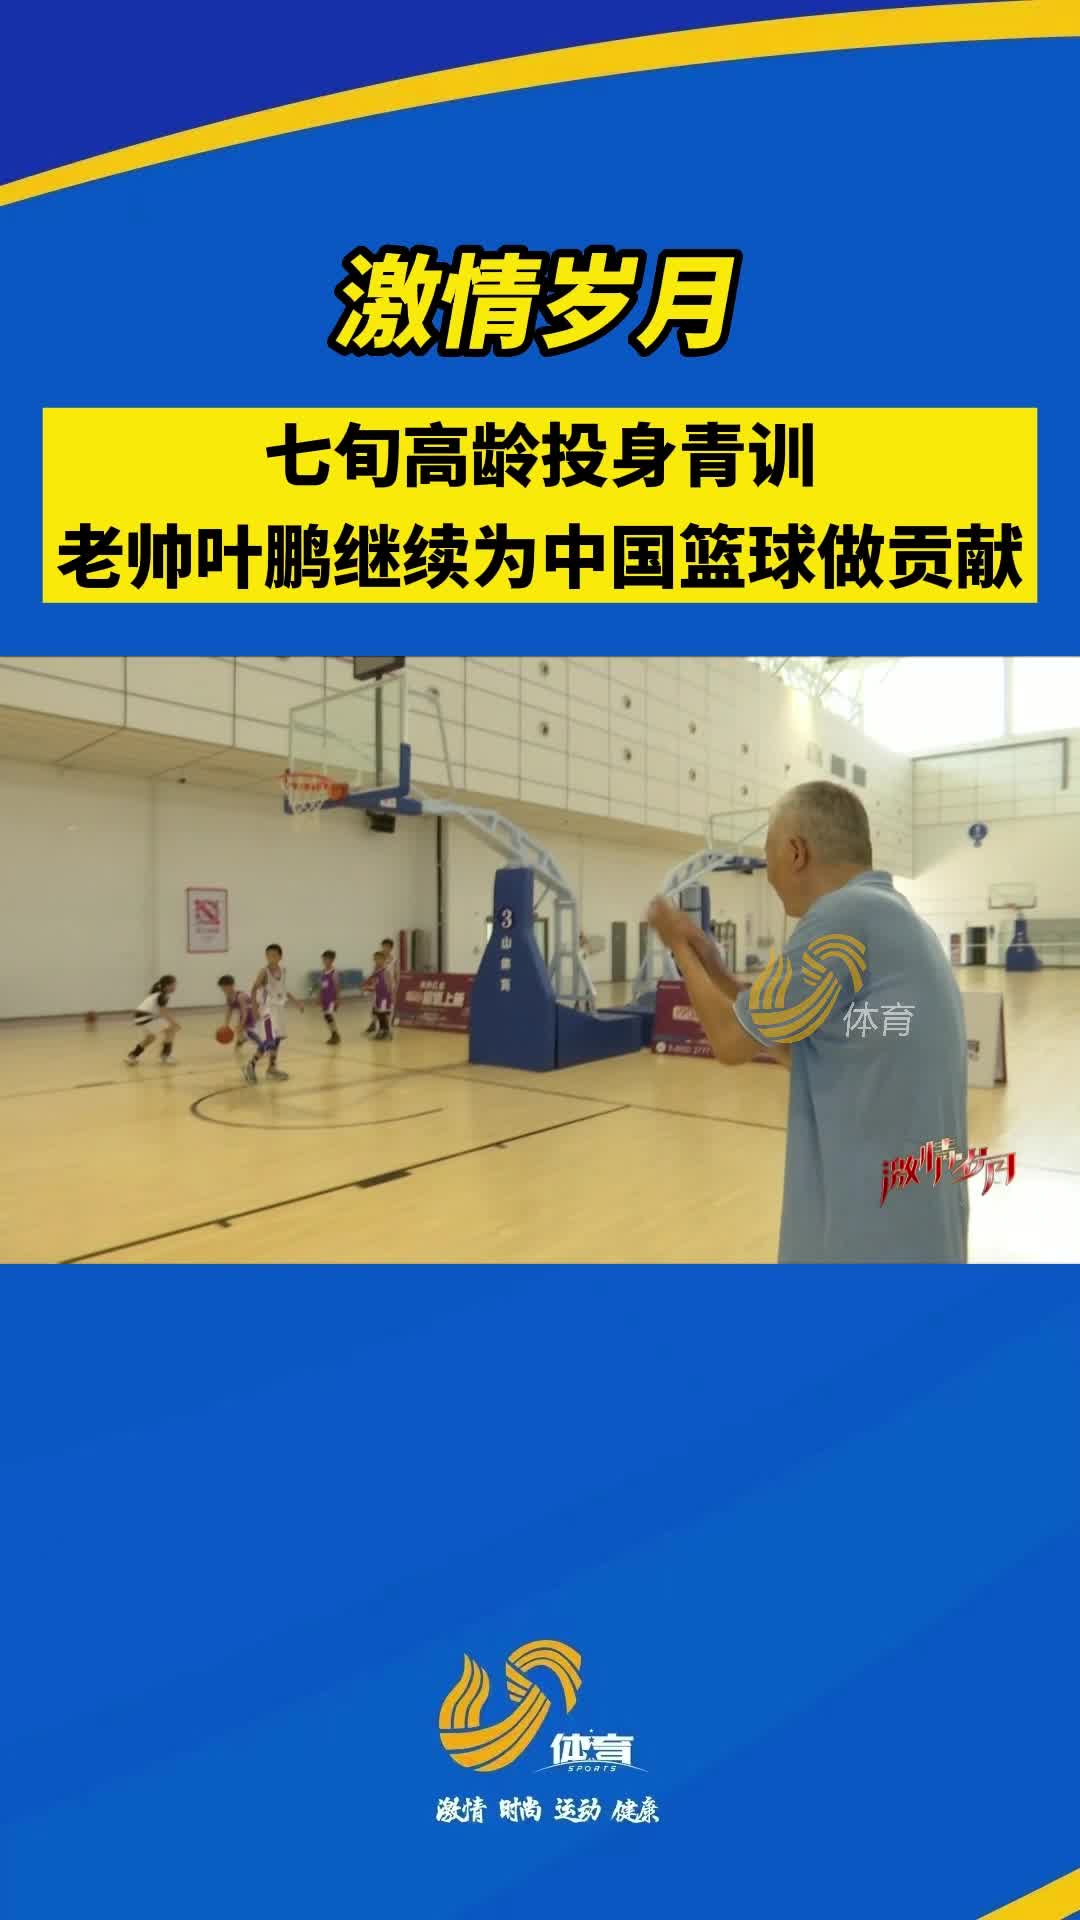 激情岁月丨七旬高龄投身青训，老帅叶鹏继续为中国篮球做贡献